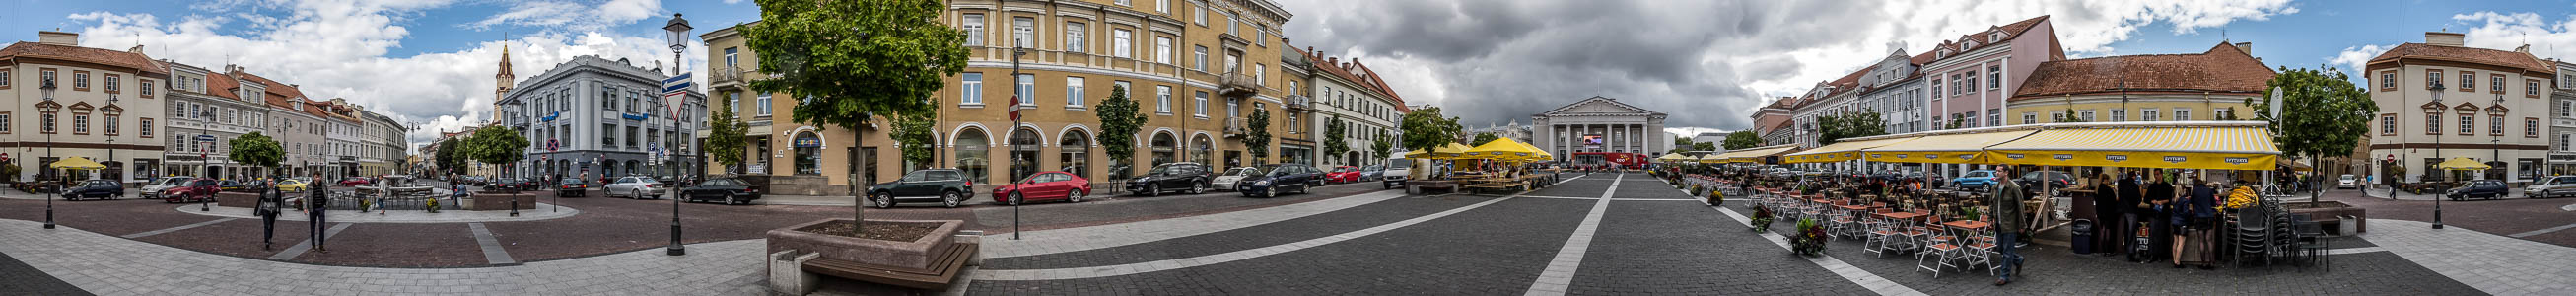 Vilnius Altstadt: Rathausplatz